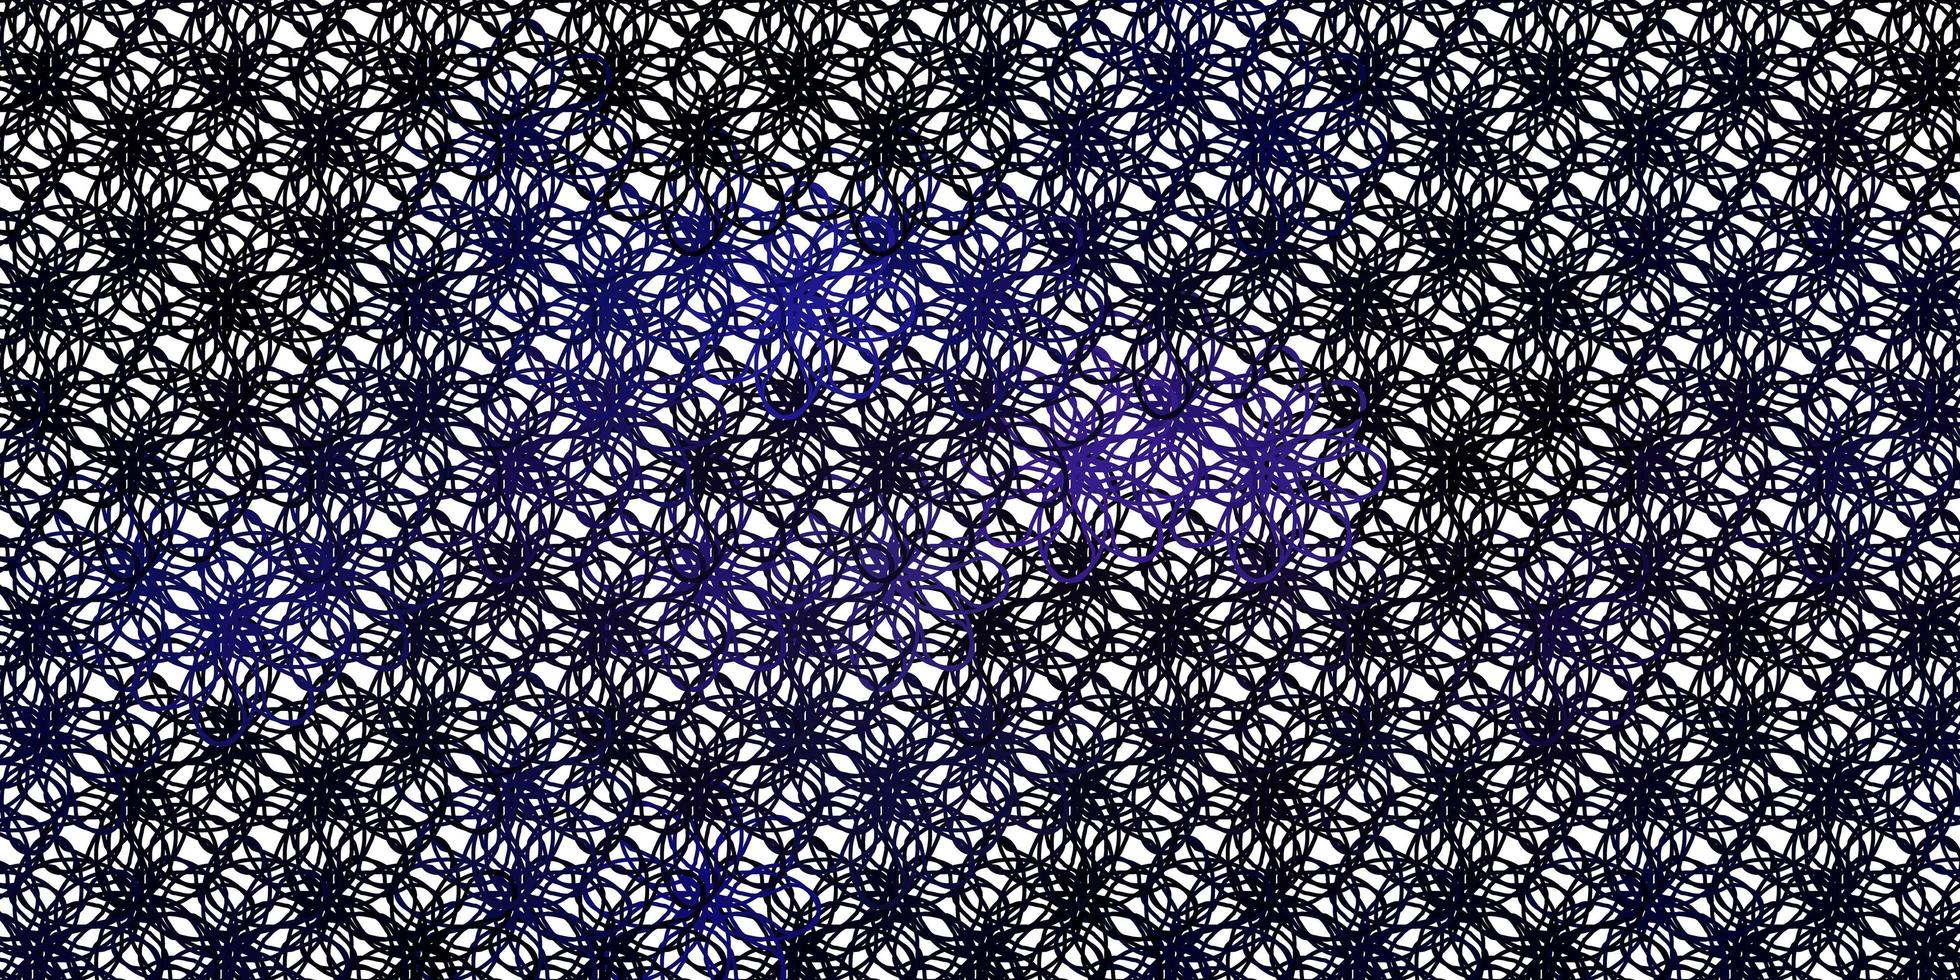 textura de vector púrpura claro con arco circular.